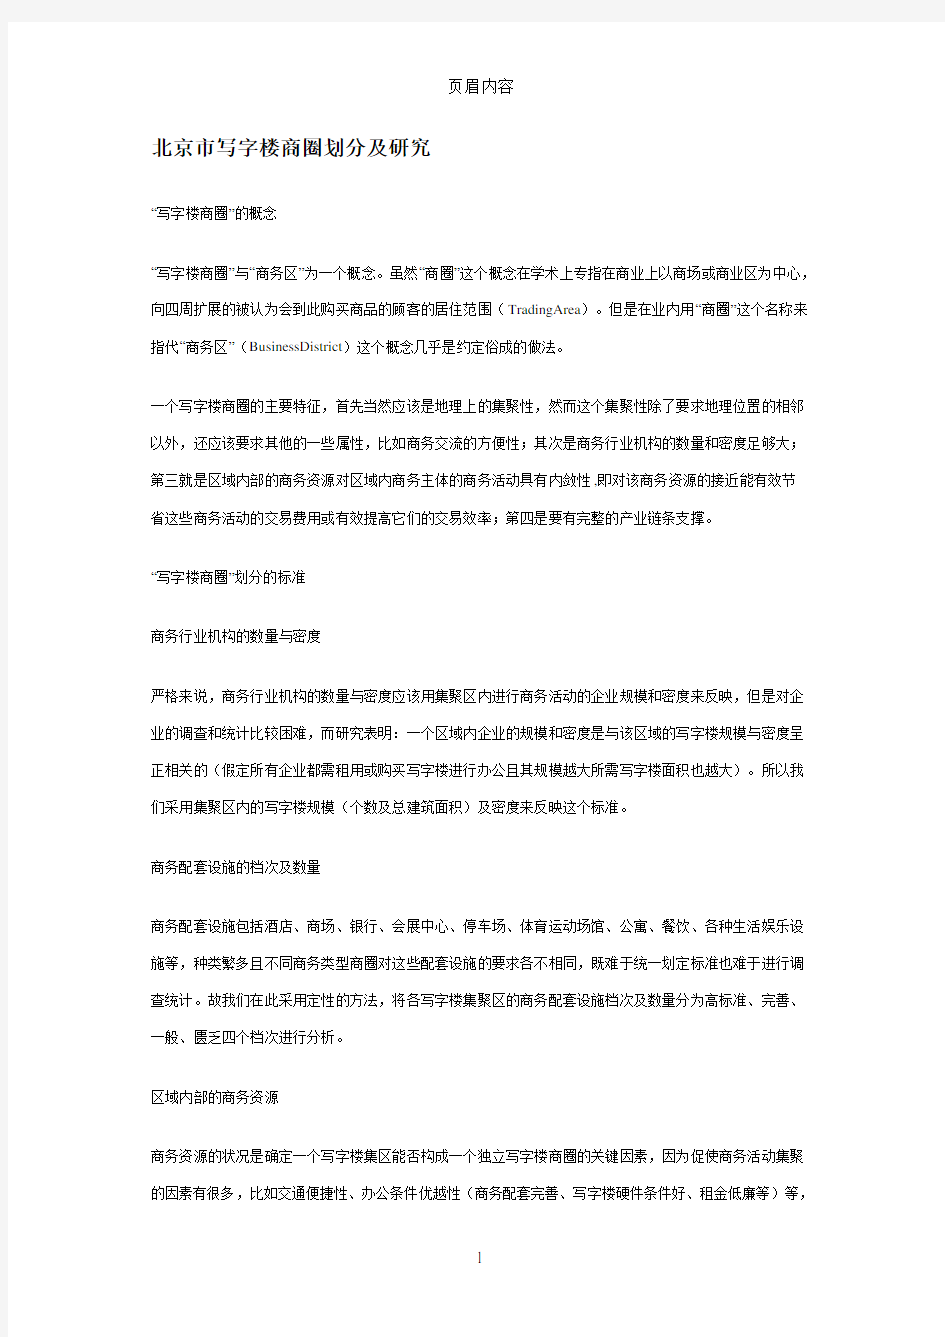 北京市写字楼商圈划分及研究